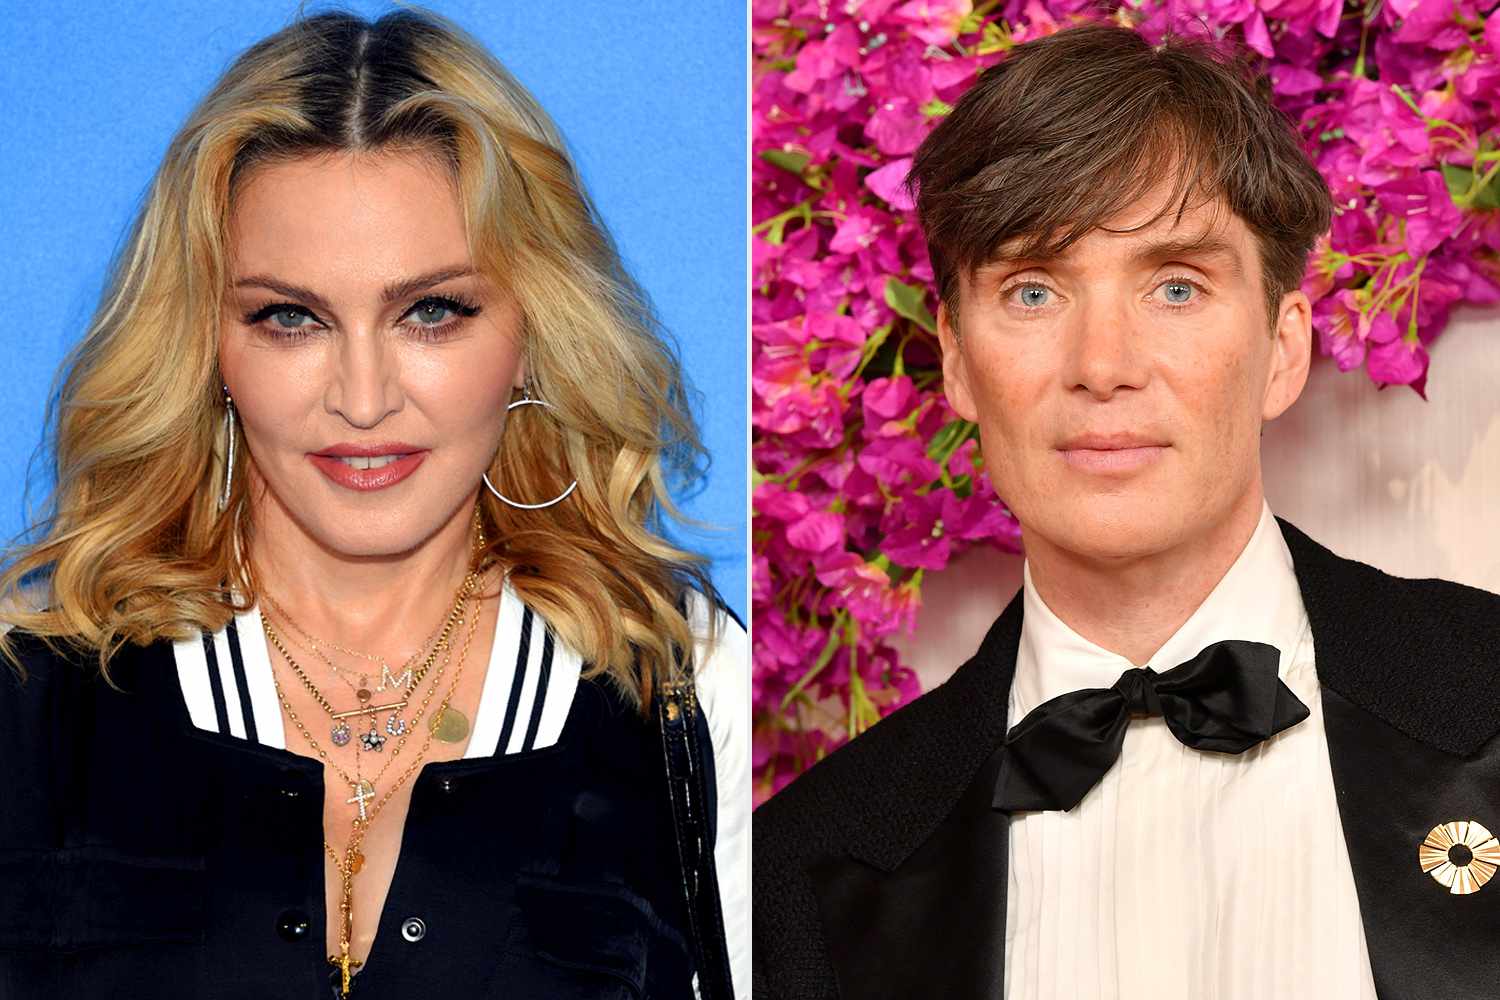 Madonna recalls meeting with Cillian Murphy at Oscar party